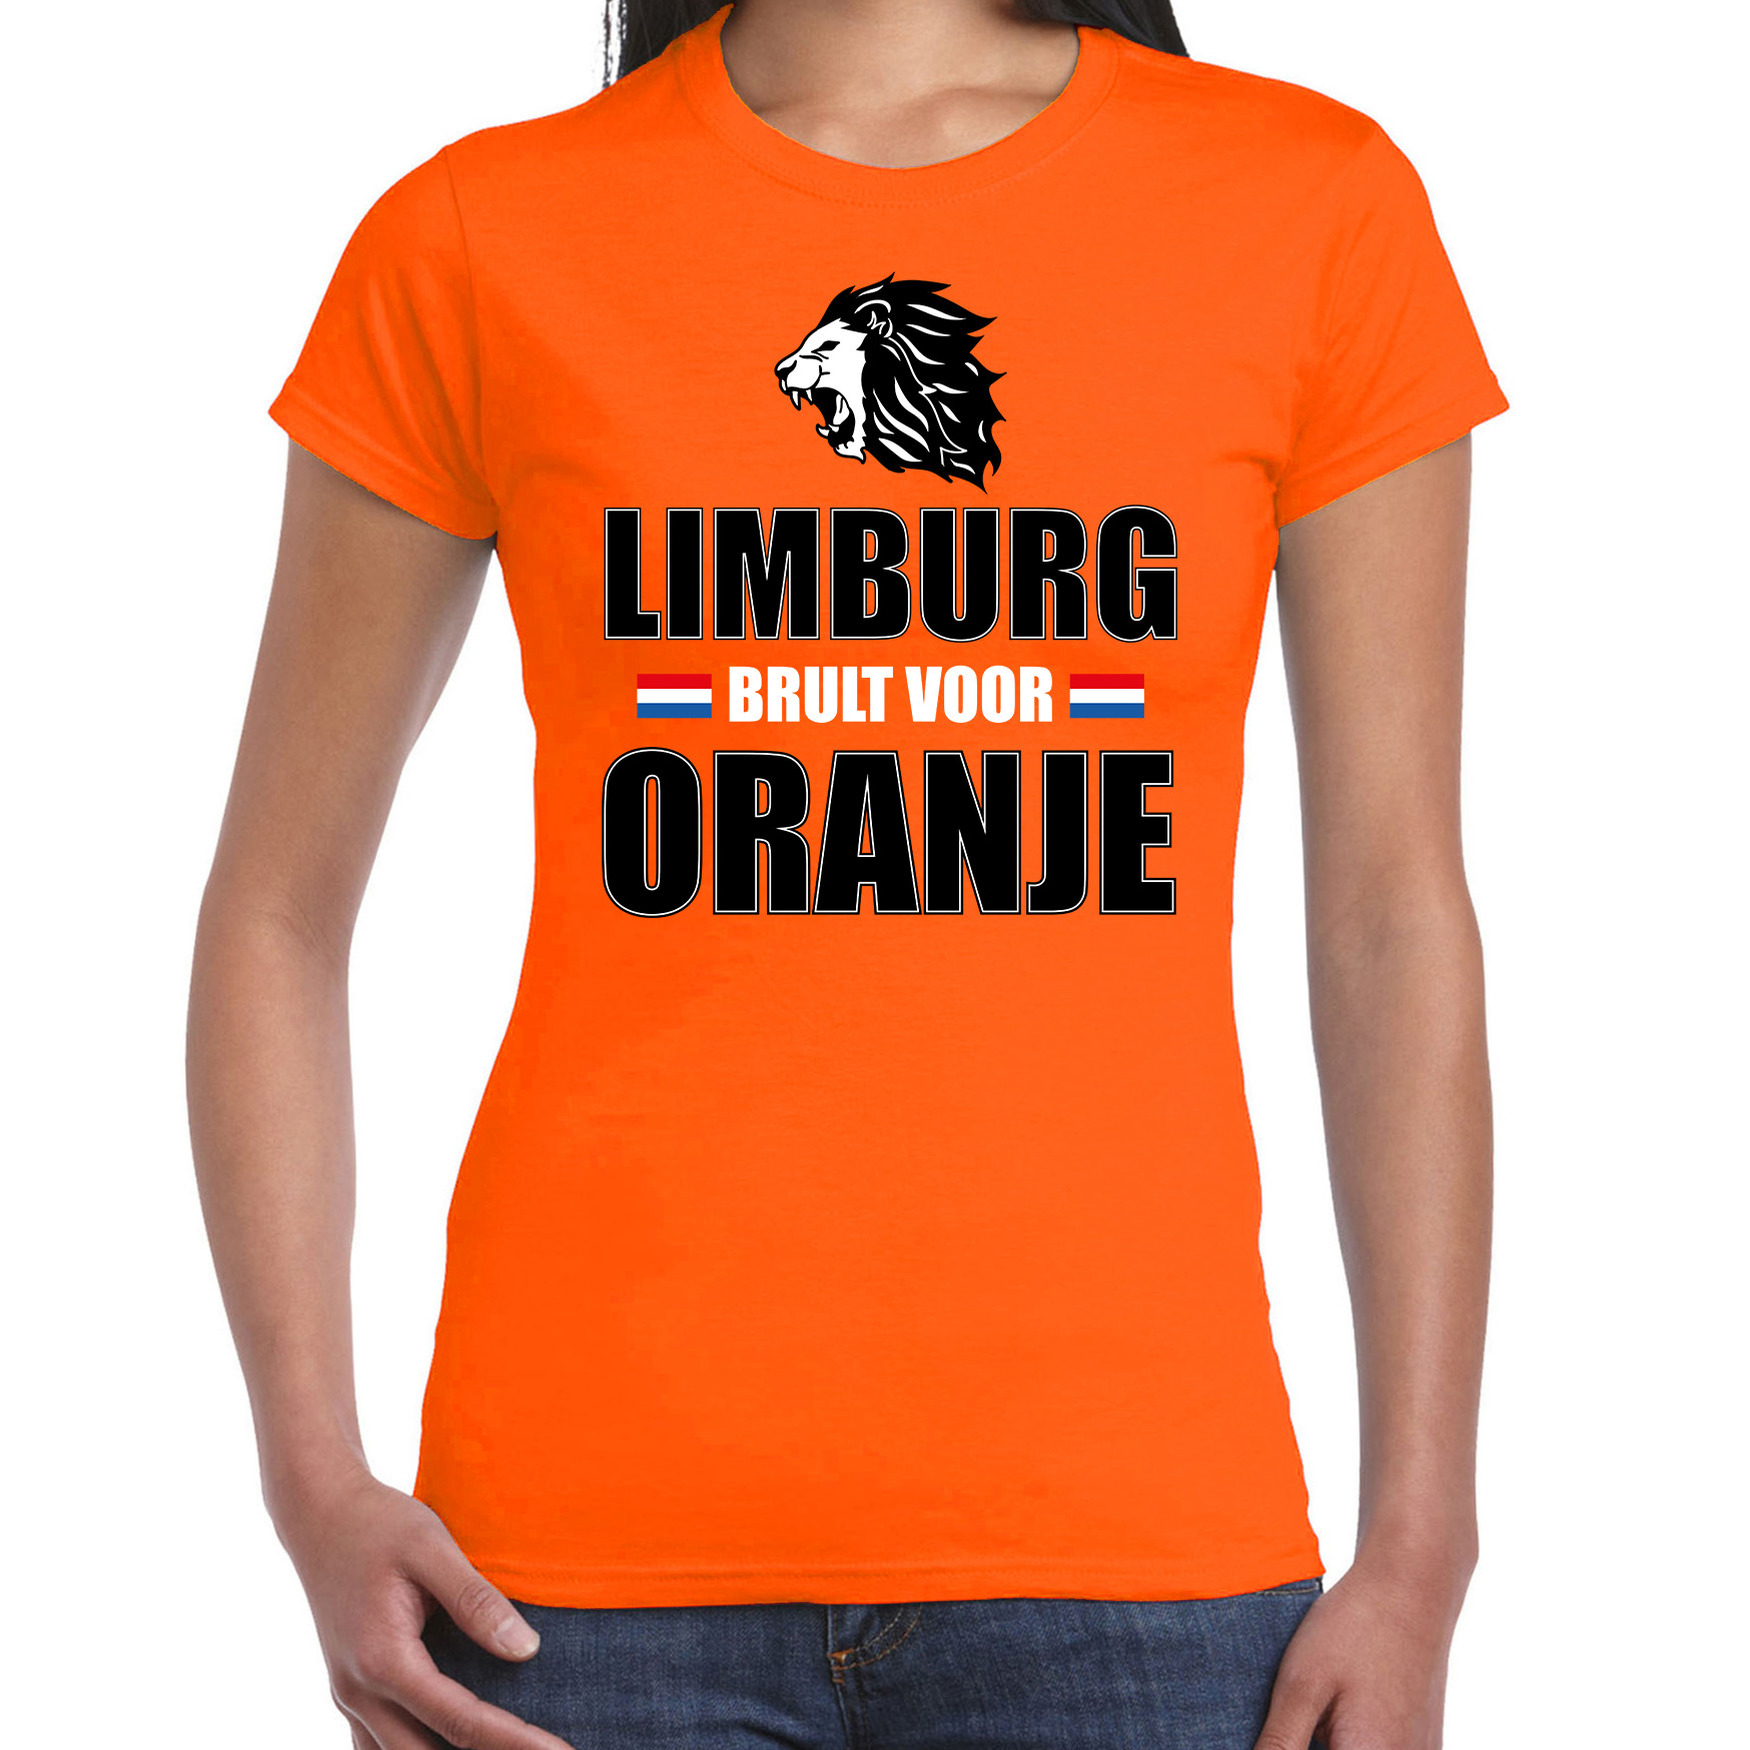 Oranje t-shirt Limburg brult voor oranje dames - Holland - Nederland supporter shirt EK/ WK